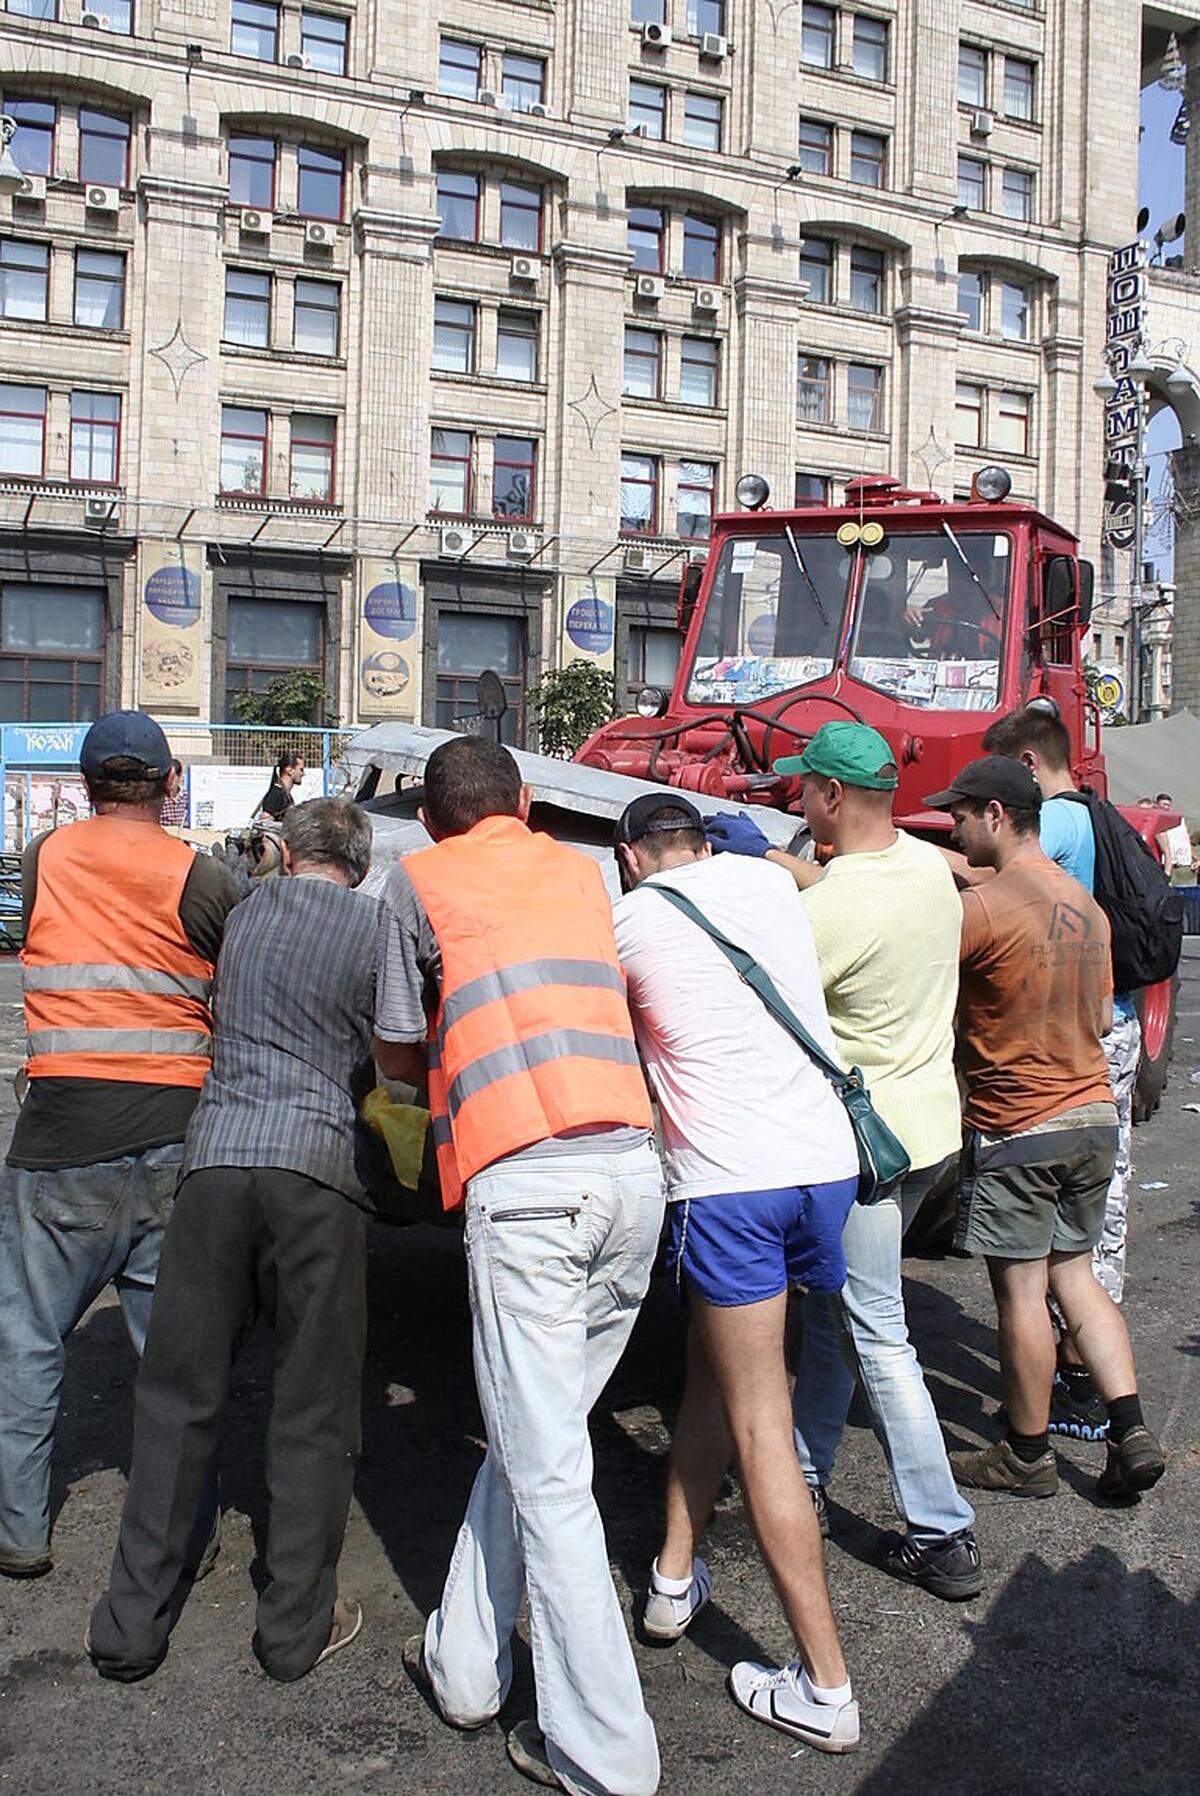 Mit vereinten Kräften hieven diese Männer einen Müllcontainer auf die Traktorschaufel. Viele Bürger beteiligen sich an der Putzaktion, zu der Bürgermeister Vitali Klitschko aufgerufen hat.